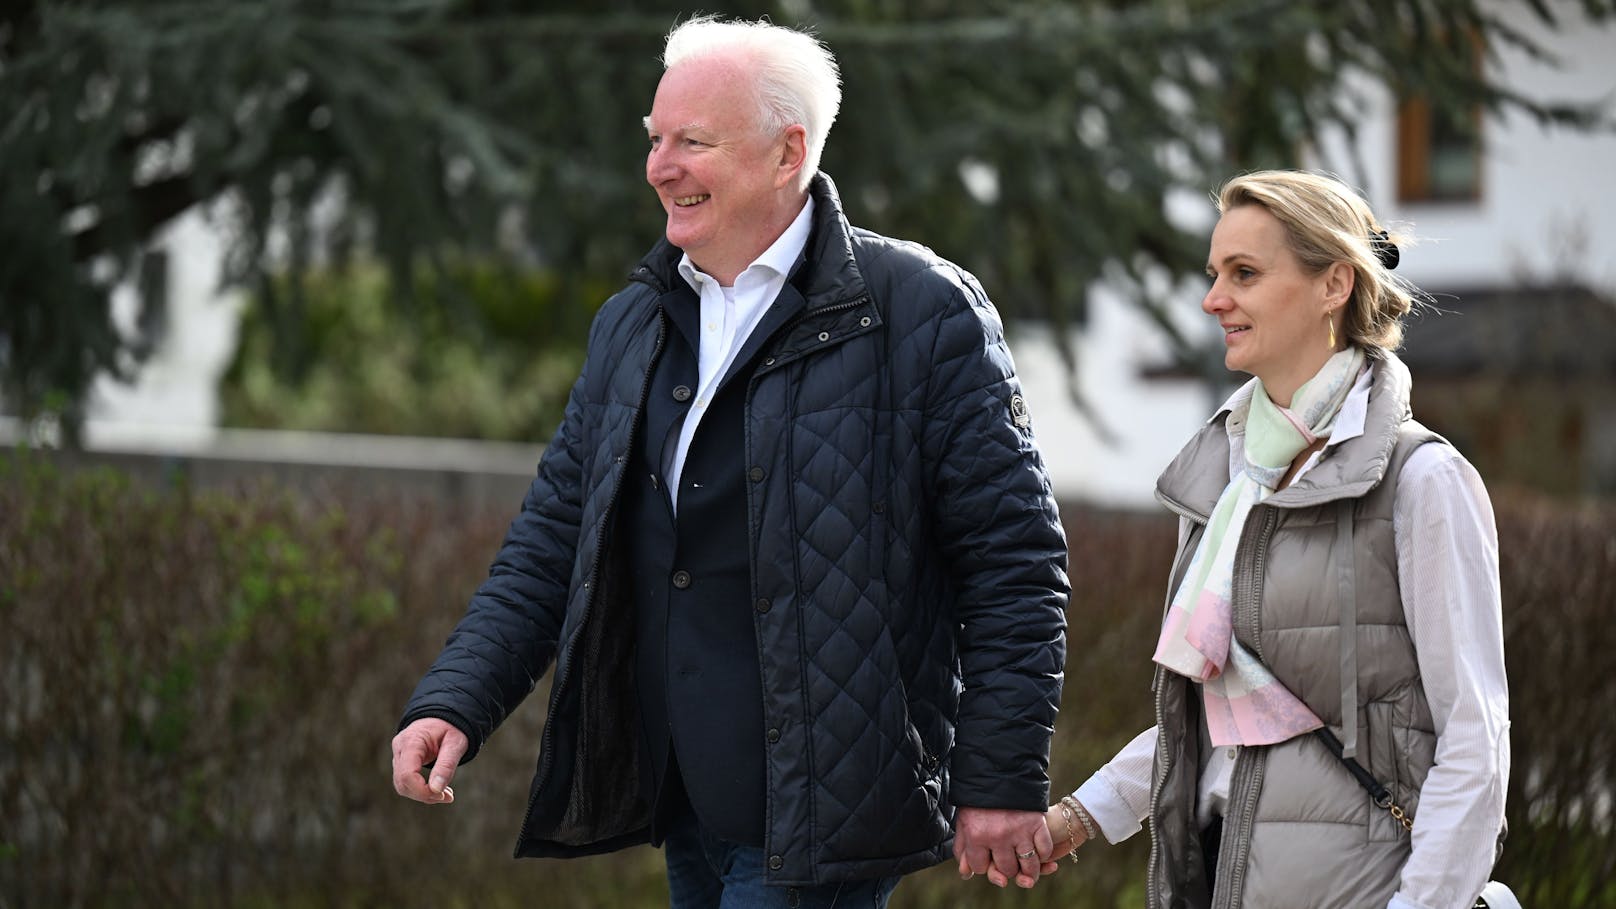 Salzburgs ÖVP-Bürgermeisterkandidat <strong>Florian Kreibich</strong> und Partnerin Elisabeth (r.) am Weg ins Wahllokal. Gestern stattete der 54-Jährige noch seinem Frisör einen Besuch ab. Auf Instagram schrieb er dazu: "Hoffe, ich bleibe von einer Kopfwäsche am Wahltag verschont"